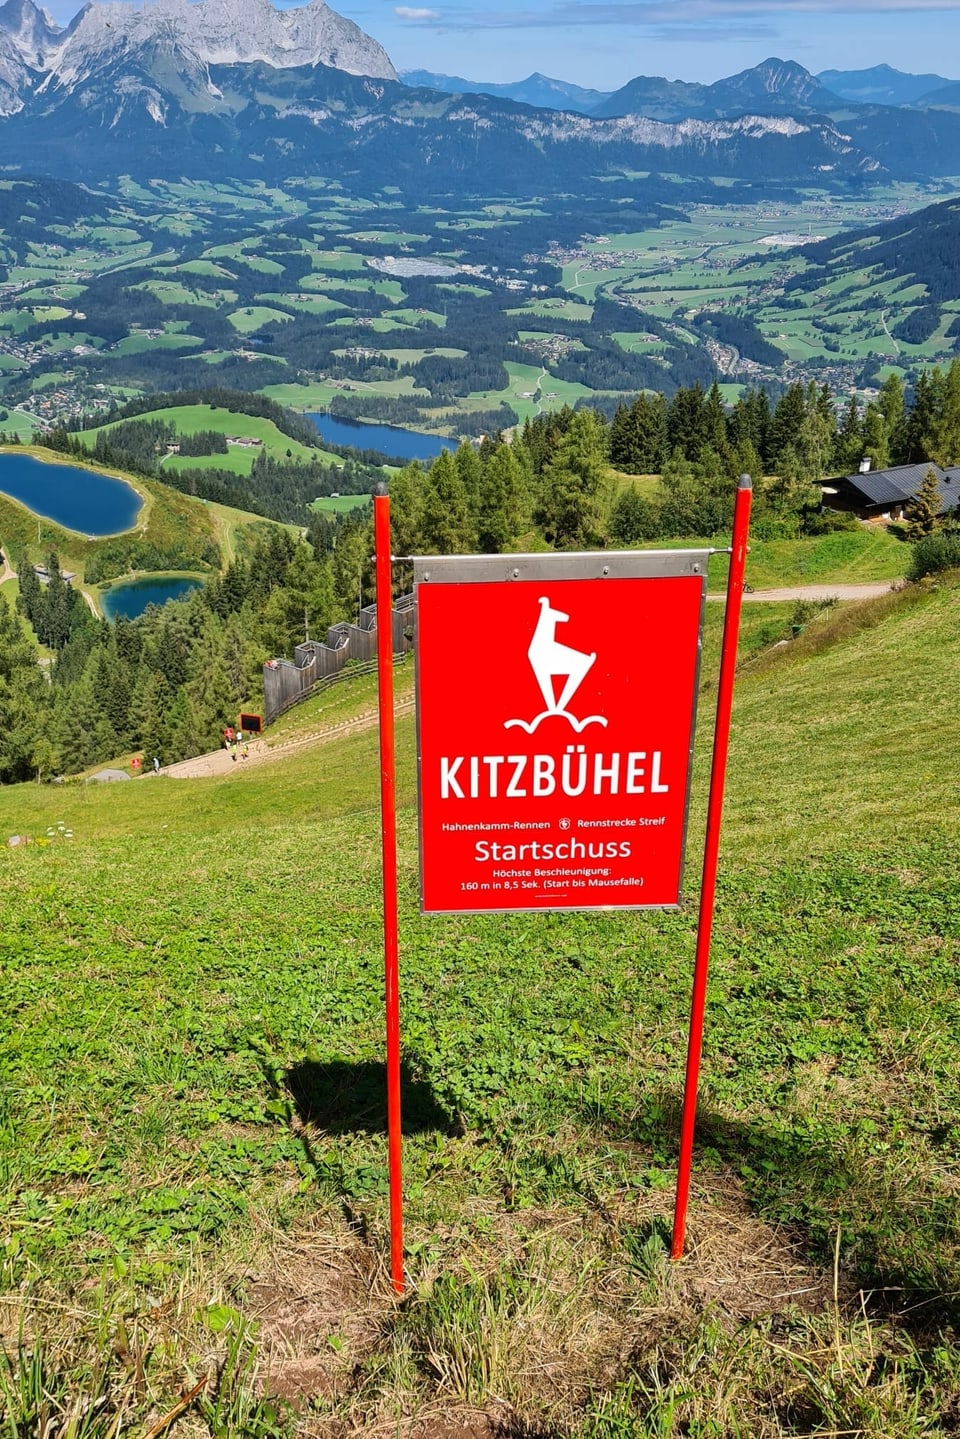 Aussicht ins Tal, im Vordergrund eine rote Tafel mit der Aufschrift "Kitzbühel".